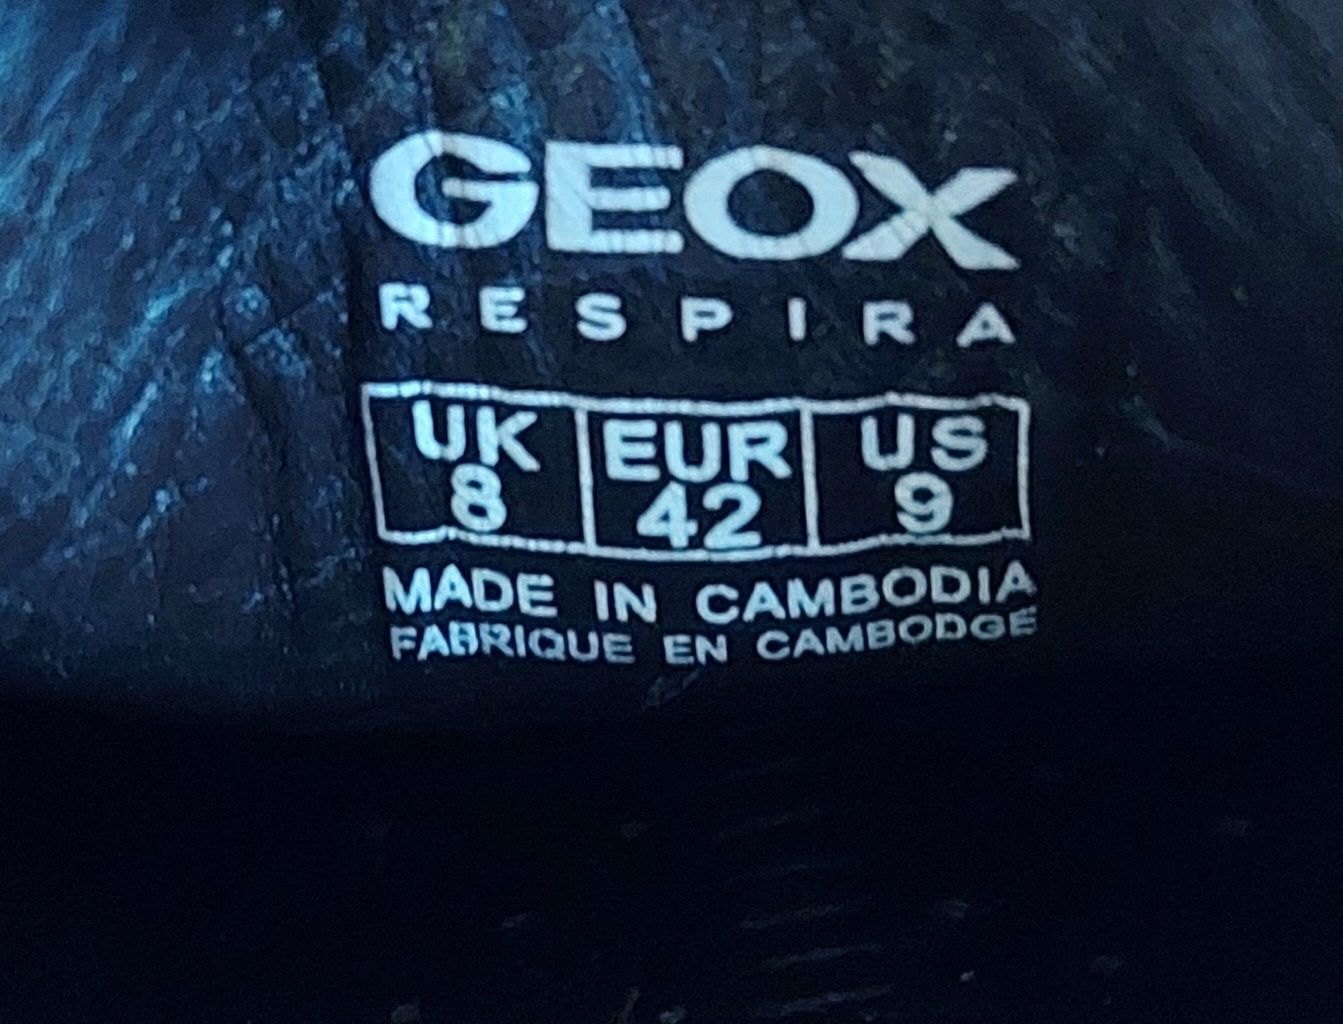 Макасини geox оригінал 

Розмір по бірці:
UK 8 EUR 42 us 9

Замір по с